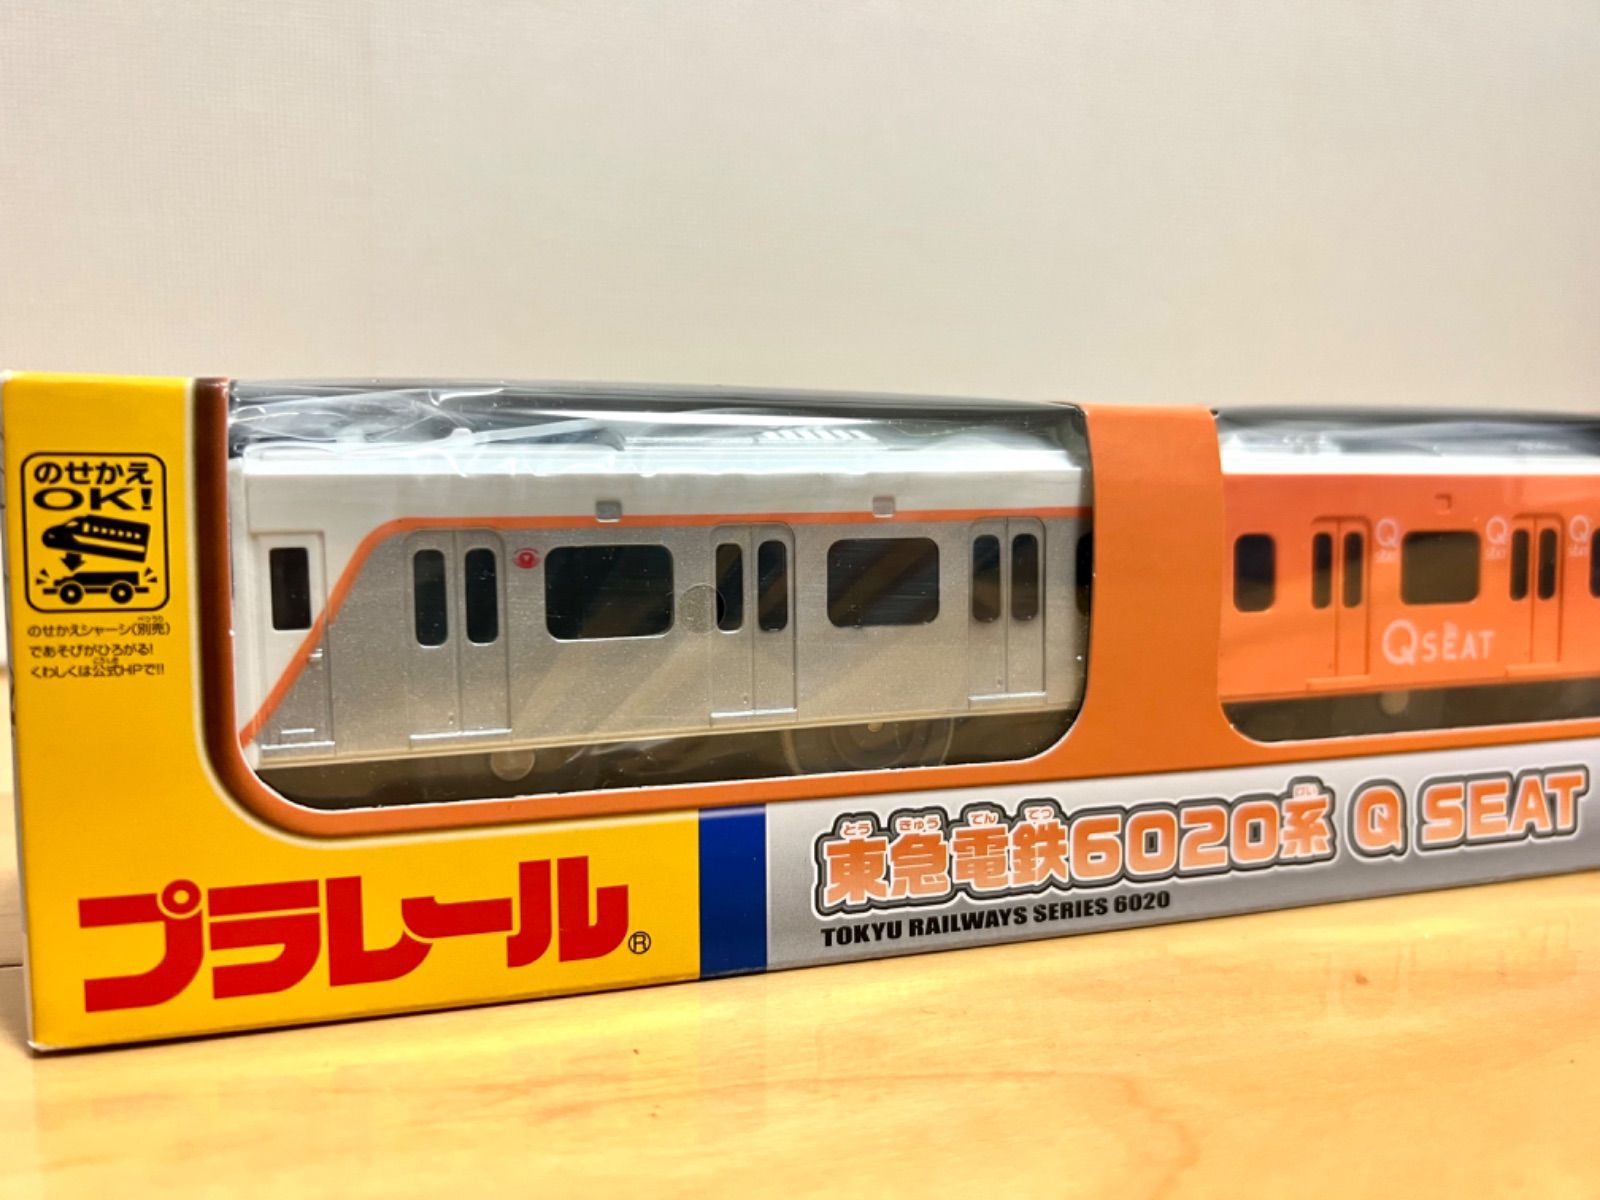 プラレール 東急電鉄 6020系 Qシート - メルカリ